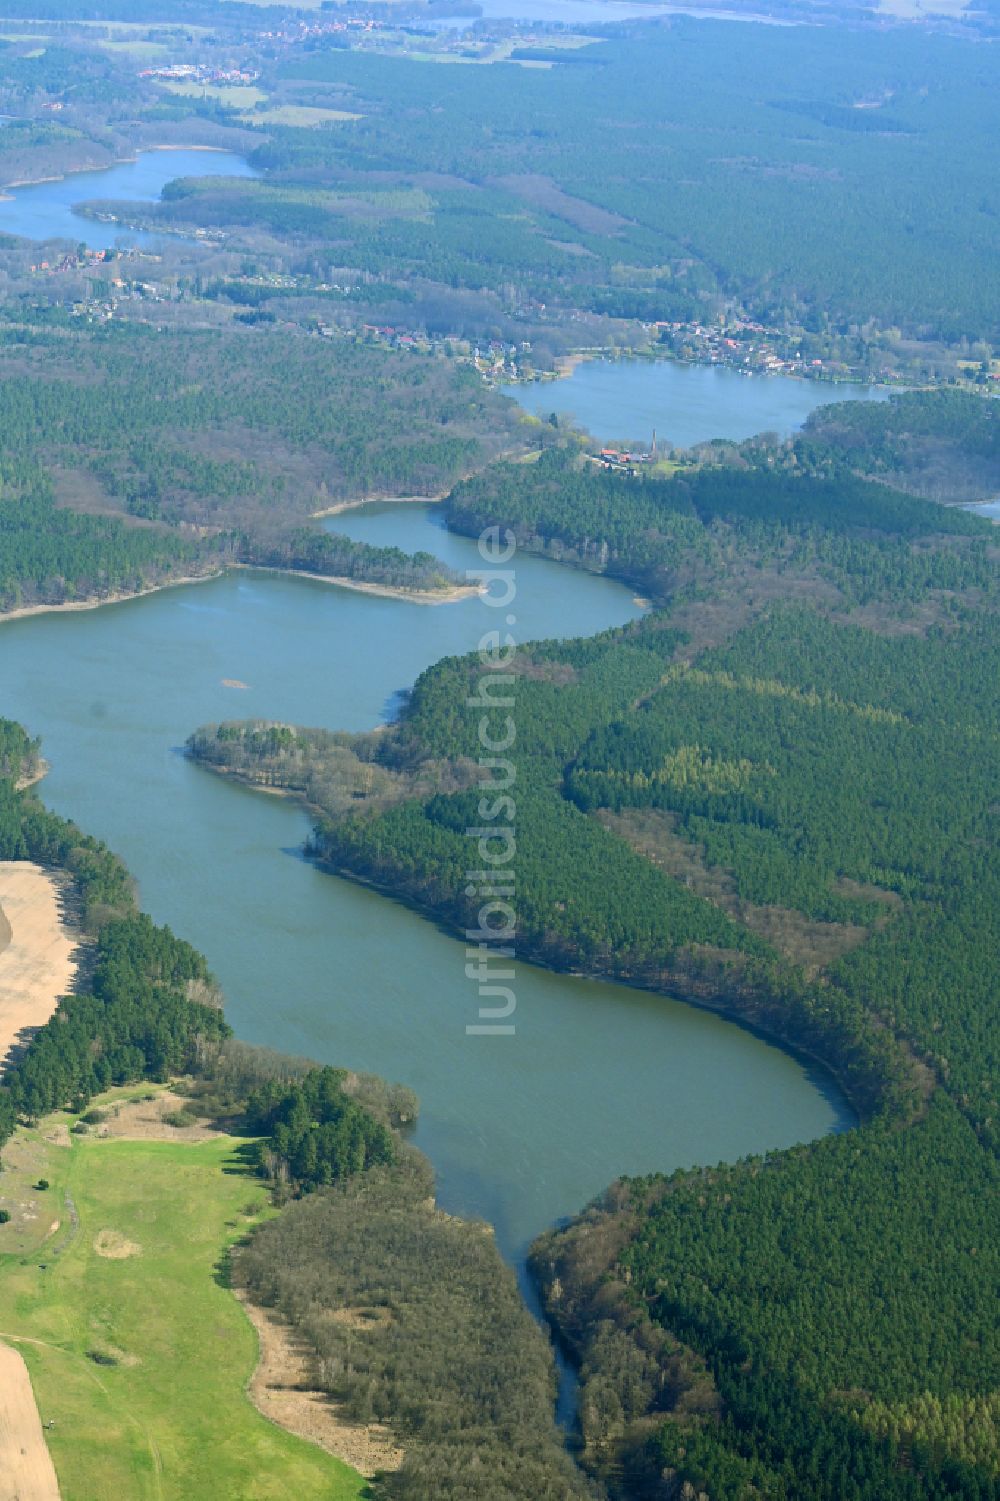 Luftaufnahme Flecken Zechlin - Seen- Kette und Uferbereiche des Sees Zotzensee in Flecken Zechlin im Bundesland Brandenburg, Deutschland